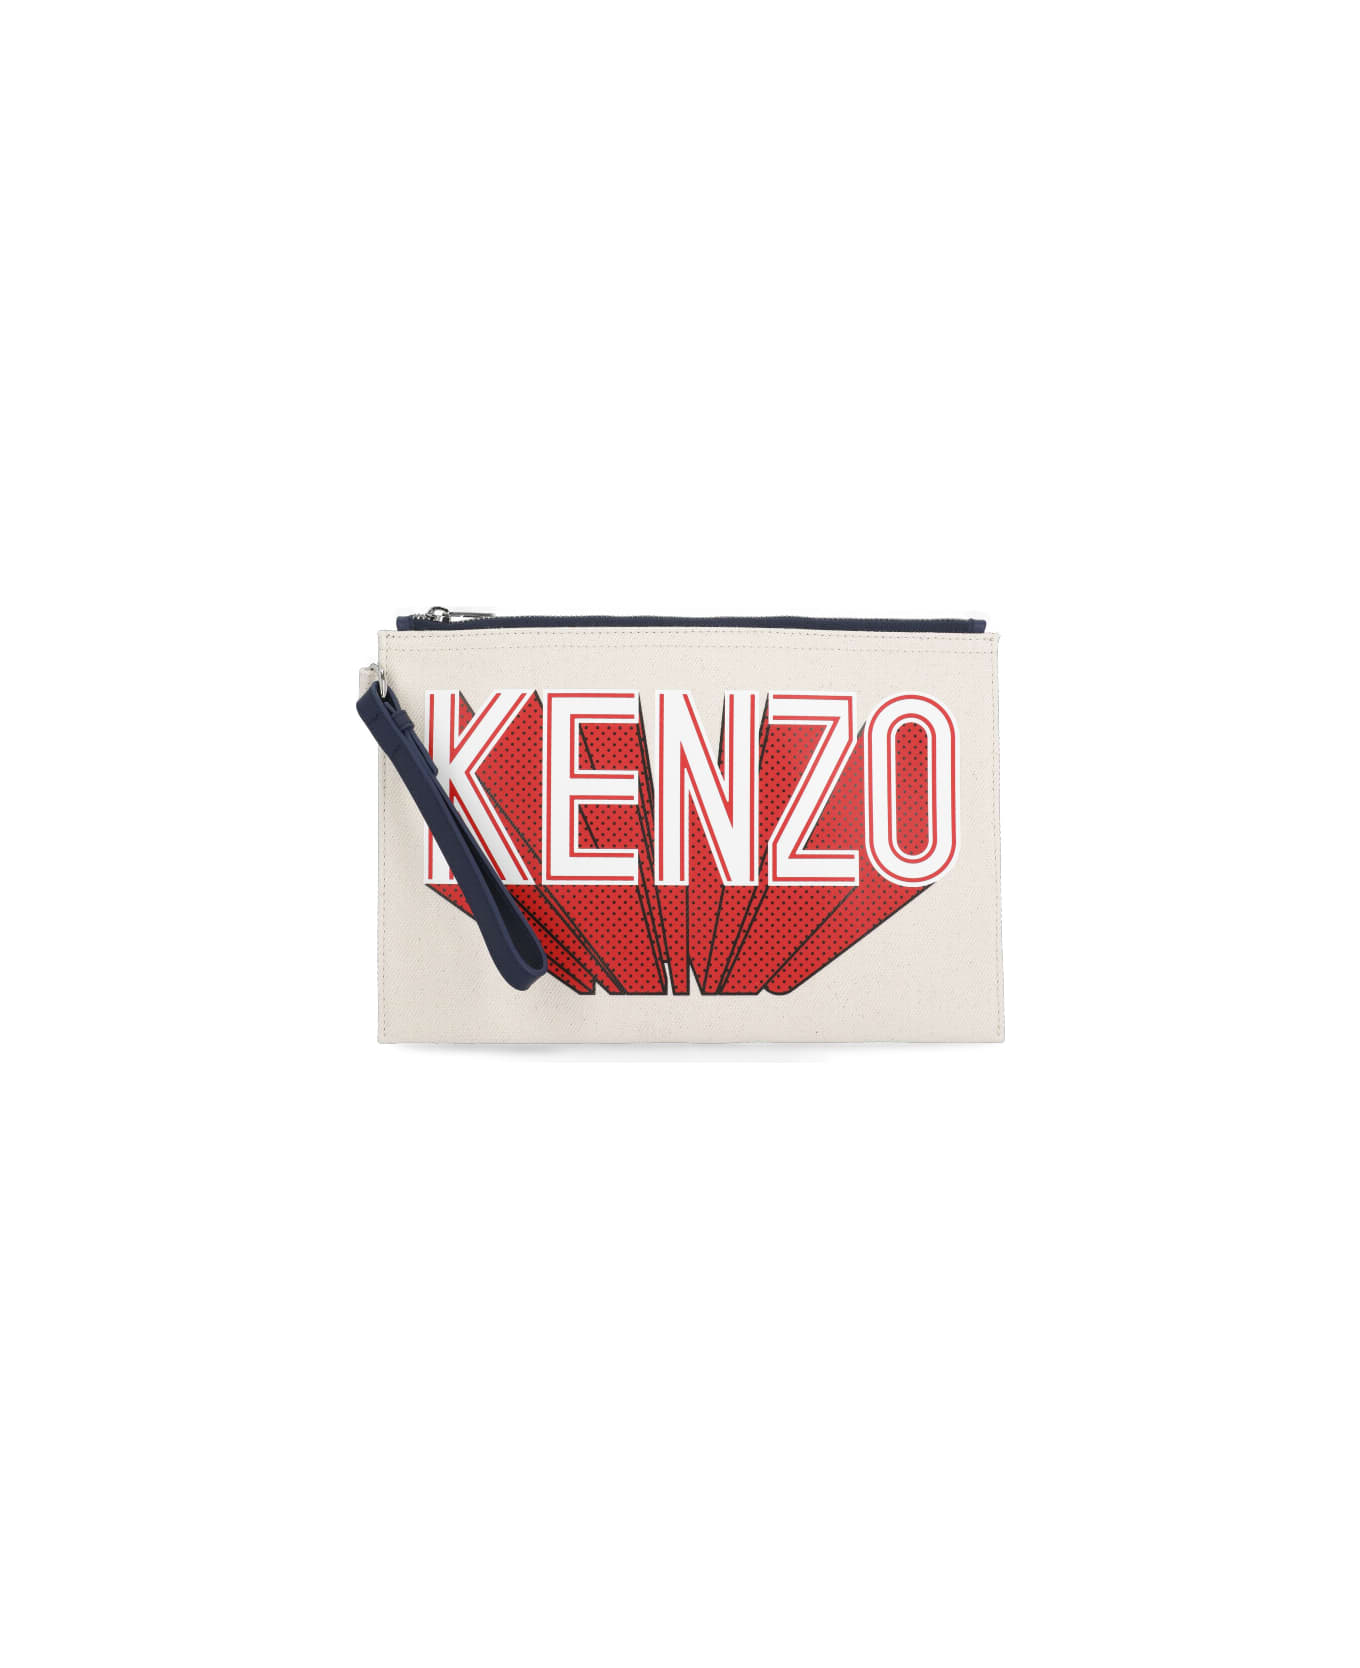 Kenzo Clutch Bag With Logo - Beige